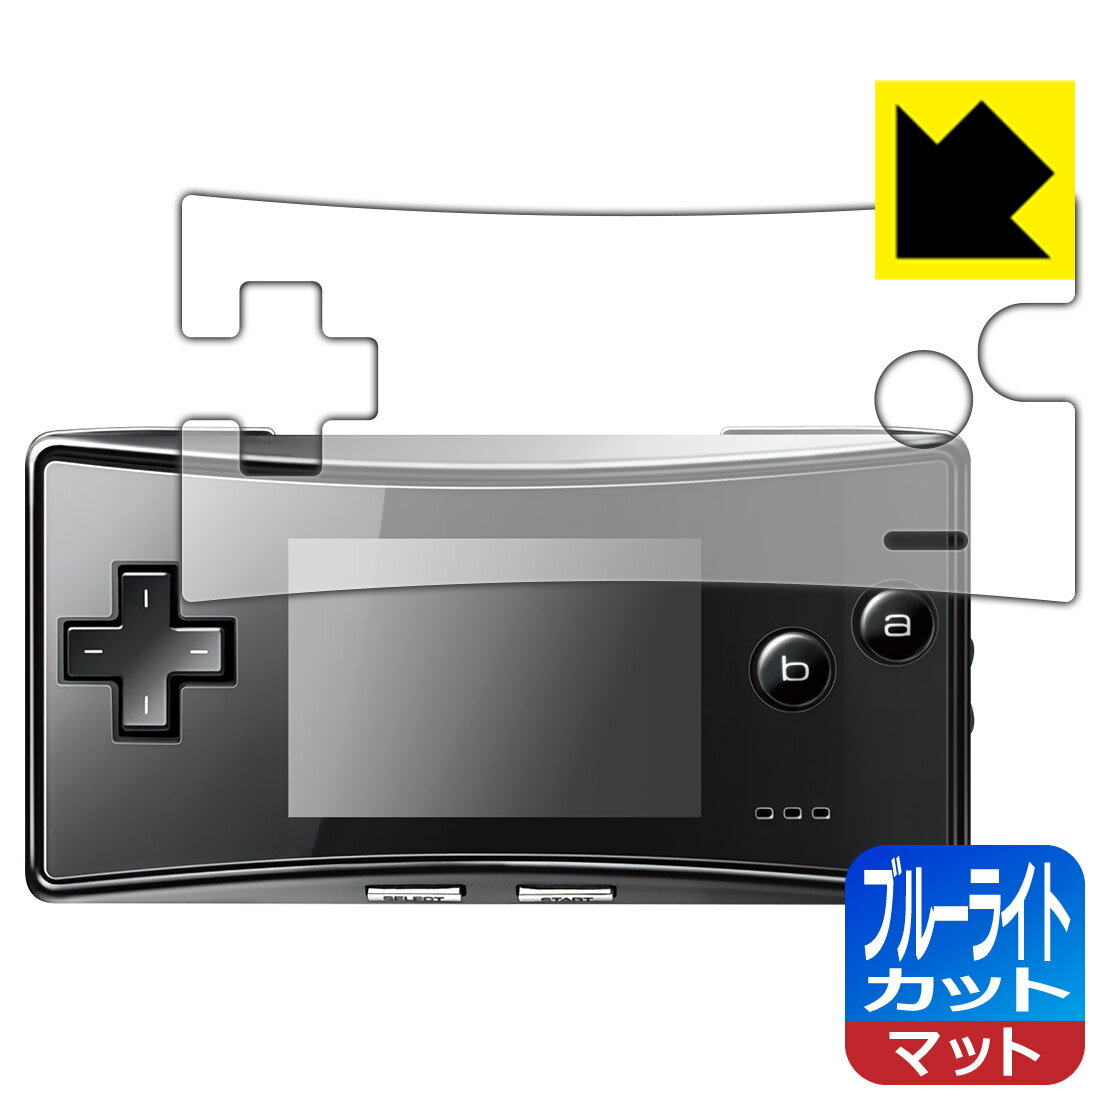 ●対応機種 : Nintendo(任天堂) ゲームボーイミクロ(GAMEBOY micro) (OXY-001) 用の商品です。●内容量 : 1枚●※機器成型時の仕上がり具合により、保護フィルムを貼り付けても密着しない部分ができる場合があります。ご了承ください。(保護フィルムの貼り付く範囲はイメージ画像のようになります)　　※このページに記載されている会社名や製品名、対応機種名などは各社の商標、または登録商標です。●目に有害といわれるブルーライトを34%カット！目に優しく疲れにくい！画面の映り込みを抑える反射低減タイプ！●安心の国産素材を使用。日本国内の自社工場で製造し出荷しています。【ポスト投函送料無料】商品は【ポスト投函発送 (追跡可能メール便)】で発送します。お急ぎ、配達日時を指定されたい方は以下のクーポンを同時購入ください。【お急ぎ便クーポン】　プラス110円(税込)で速達扱いでの発送。お届けはポストへの投函となります。【配達日時指定クーポン】　プラス550円(税込)で配達日時を指定し、宅配便で発送させていただきます。【お急ぎ便クーポン】はこちらをクリック【配達日時指定クーポン】はこちらをクリック　液晶画面のLEDバックライトから発せられる「ブルーライト」は可視光線の中で最も刺激が強く、目や身体に悪影響があるのではないかといわれています。このフィルムは、画面に貼りつけるだけで380〜500nmの「ブルーライト」を大幅にカットしますので、仕事や遊びで、長時間液晶画面を使用する方や、目の疲れが気になる方にオススメです。「ブルーライトカット機能付きPCメガネ」などをかけることなく、「ブルーライト」をカットすることができますので、メガネを持ち歩く必要もなく便利です。※全光線透過率：90%※この製品は透明タイプです。表面に微細な凹凸を作ることにより、外光を乱反射させギラツキを抑える「アンチグレア加工」がされております。屋外での太陽光の映り込み、屋内でも蛍光灯などの映り込みが気になるシーンが多い方におすすめです。また、指紋がついた場合でも目立ちにくいという特長があります。指滑りはさらさらな使用感でストレスのない操作・入力が可能です。ハードコート加工がされており、キズや擦れに強くなっています。簡単にキズがつかず長くご利用いただけます。反射防止のアンチグレア加工で指紋が目立ちにくい上、表面は防汚コーティングがされており、皮脂や汚れがつきにくく、また、落ちやすくなっています。接着面は気泡の入りにくい特殊な自己吸着タイプです。素材に柔軟性があり、貼り付け作業も簡単にできます。また、はがすときにガラス製フィルムのように割れてしまうことはありません。貼り直しが何度でもできるので、正しい位置へ貼り付けられるまでやり直すことができます。抗菌加工によりフィルム表面の菌の繁殖を抑えることができます。清潔な画面を保ちたい方におすすめです。※抗菌率99.9％ / JIS Z2801 抗菌性試験方法による評価最高級グレードの国産素材を日本国内の弊社工場で加工している完全な Made in Japan です。安心の品質をお届けします。使用上の注意●本製品は機器の画面をキズなどから保護するフィルムです。他の目的にはご使用にならないでください。●本製品は液晶保護および機器本体を完全に保護することを保証するものではありません。機器の破損、損傷、故障、その他損害につきましては一切の責任を負いかねます。●製品の性質上、画面操作の反応が変化したり、表示等が変化して見える場合がございます。●貼り付け作業時の失敗(位置ズレ、汚れ、ゆがみ、折れ、気泡など)および取り外し作業時の破損、損傷などについては、一切の責任を負いかねます。●水に濡れた状態でのご使用は吸着力の低下などにより、保護フィルムがはがれてしまう場合がございます。防水対応の機器でご使用の場合はご注意ください。●アルコール類やその他薬剤を本製品に付着させないでください。表面のコーティングや吸着面が変質するおそれがあります。●品質向上のため、仕様などを予告なく変更する場合がございますので、予めご了承ください。